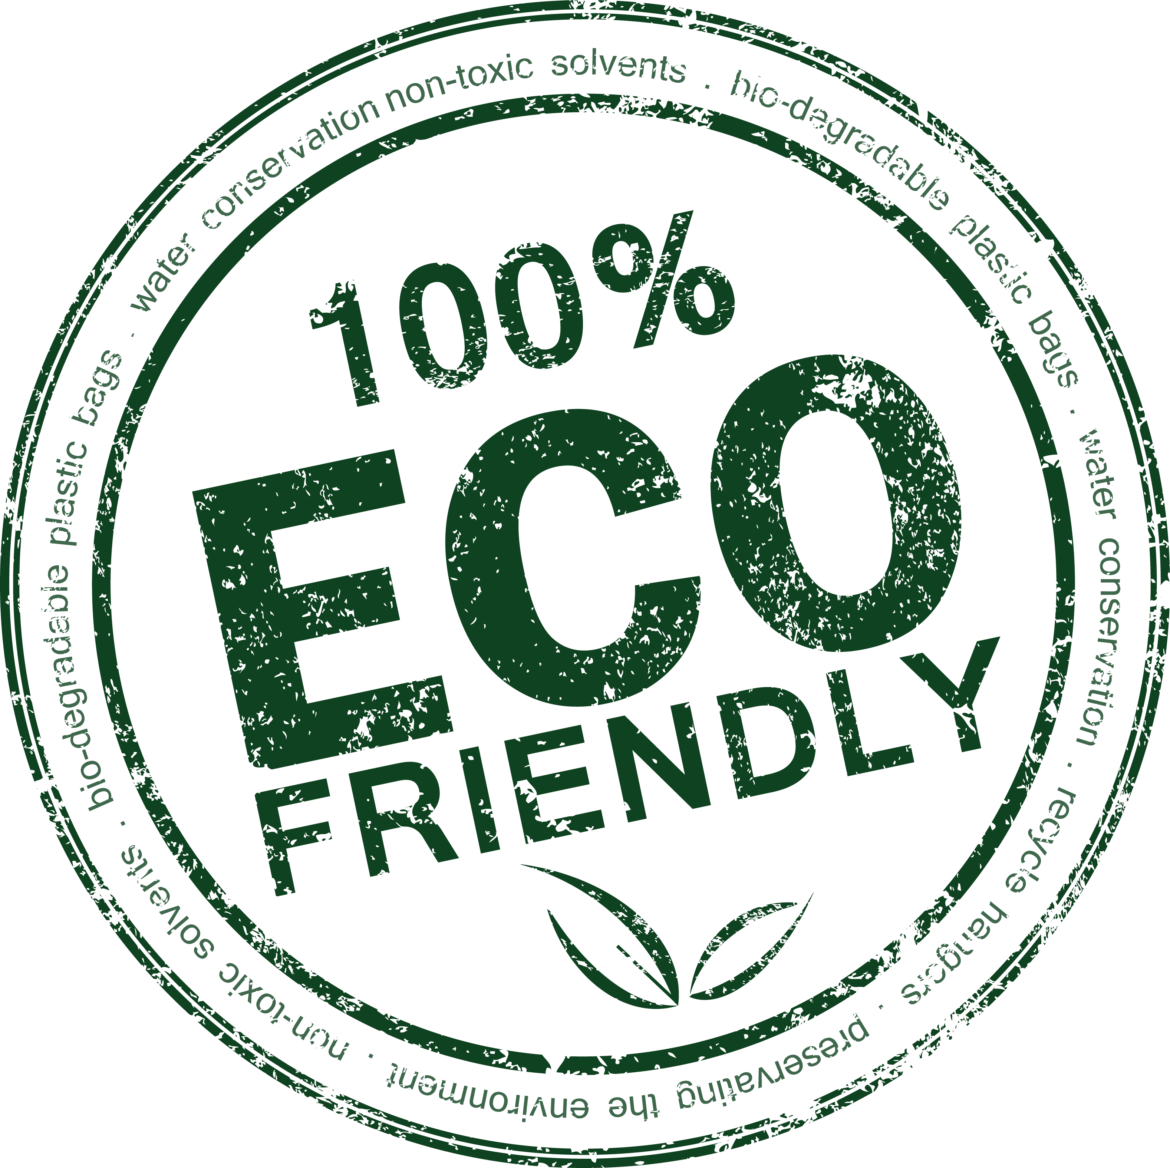 eco-friendly-1170x1168